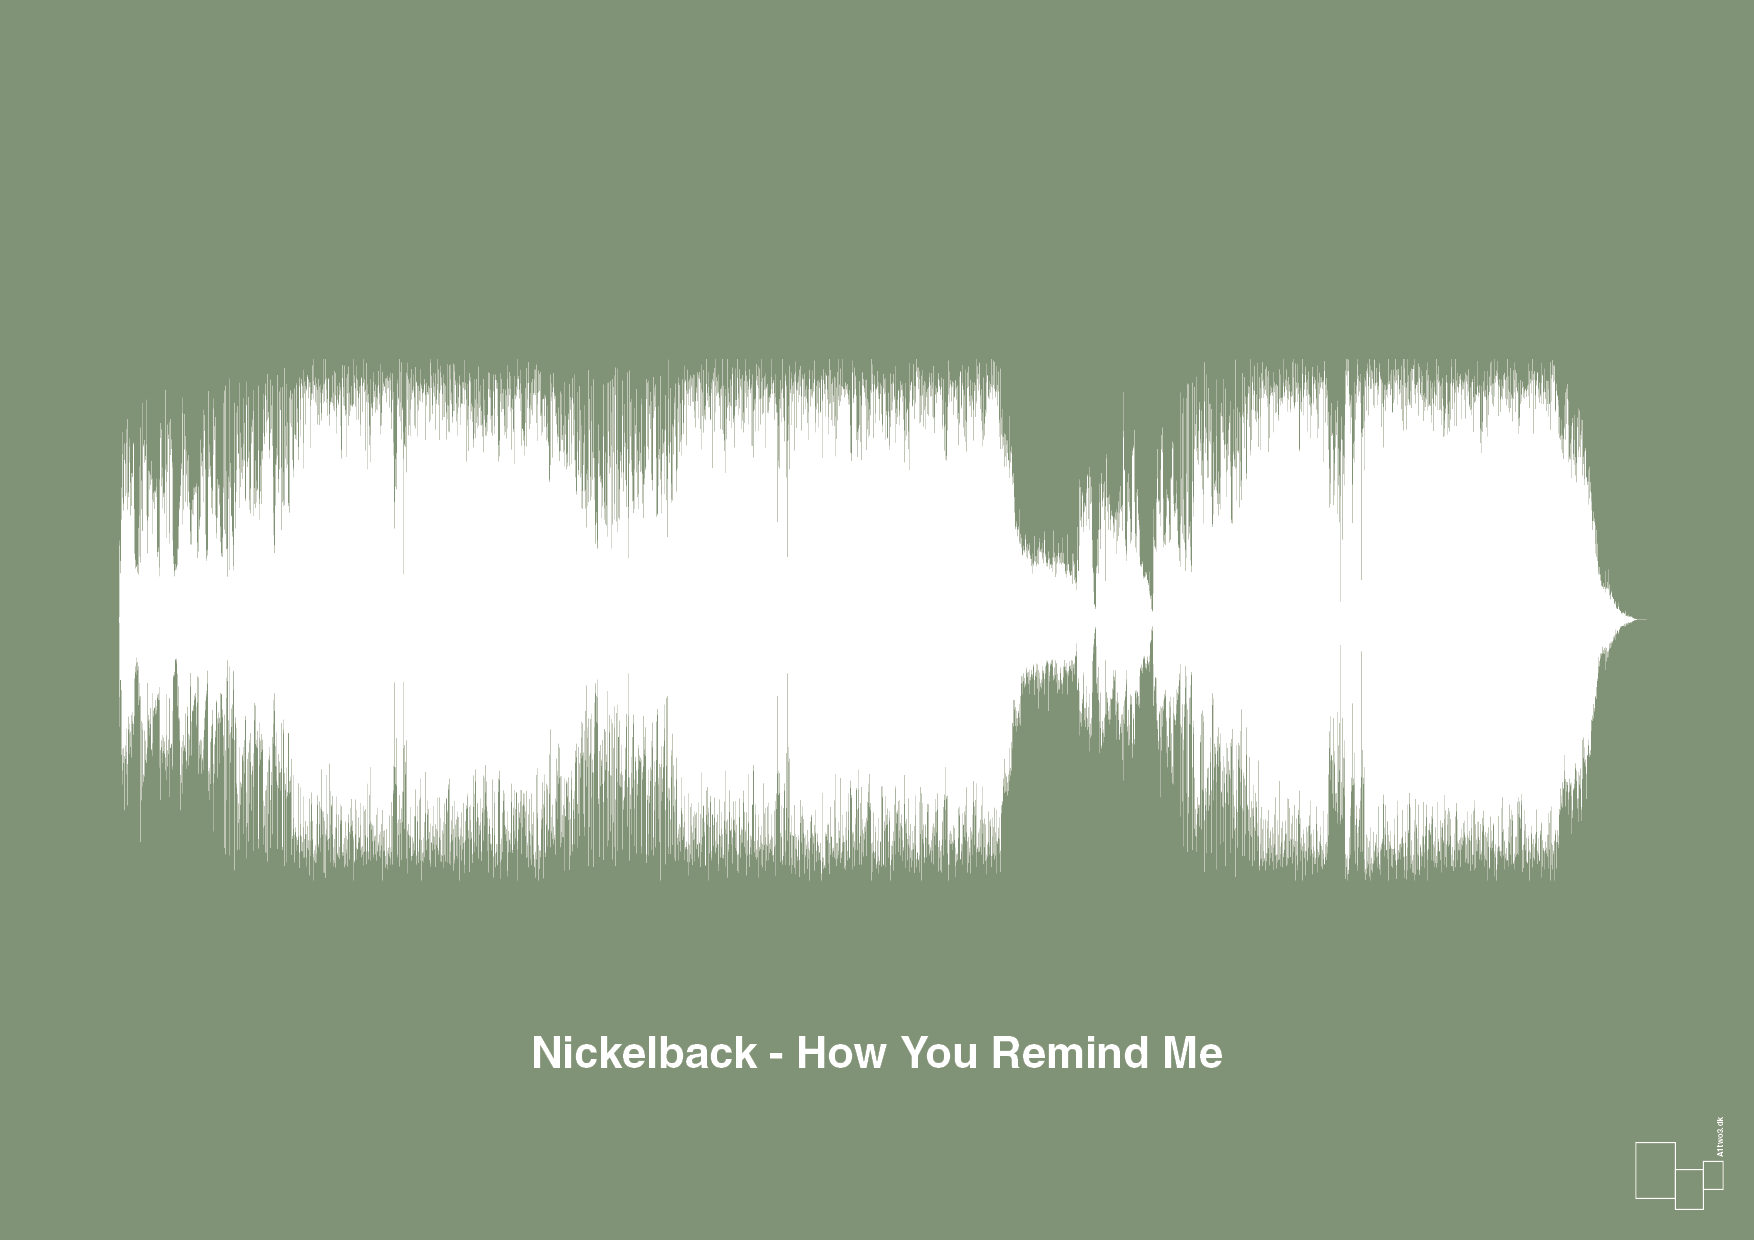 nickelback - how you remind me - Plakat med Musik i Jade